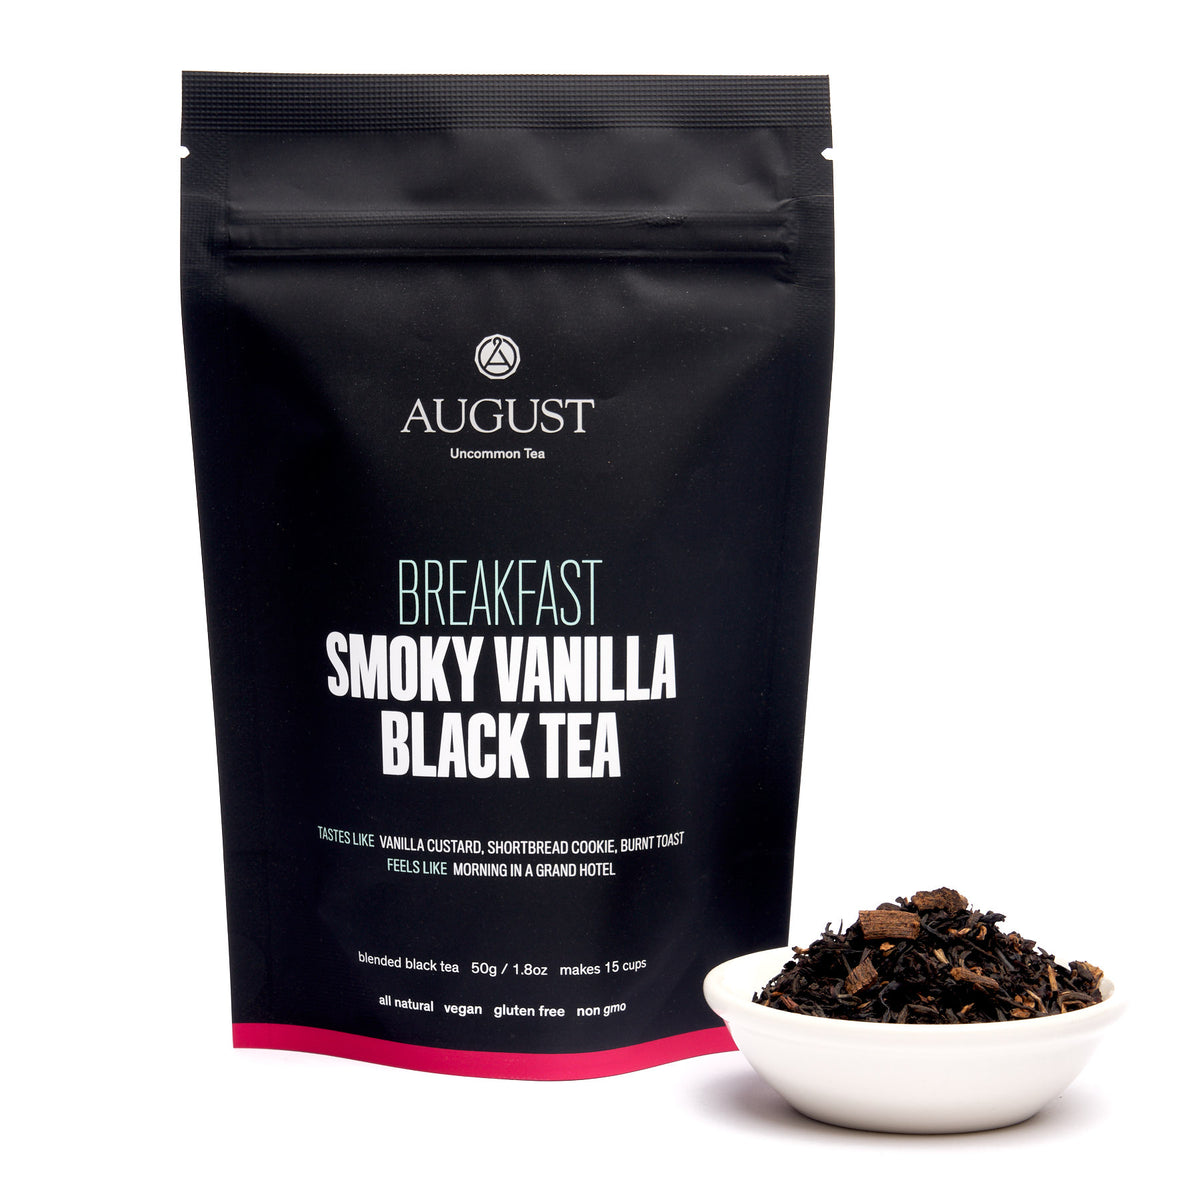 Breakfast: Smoky Vanilla Black Tea